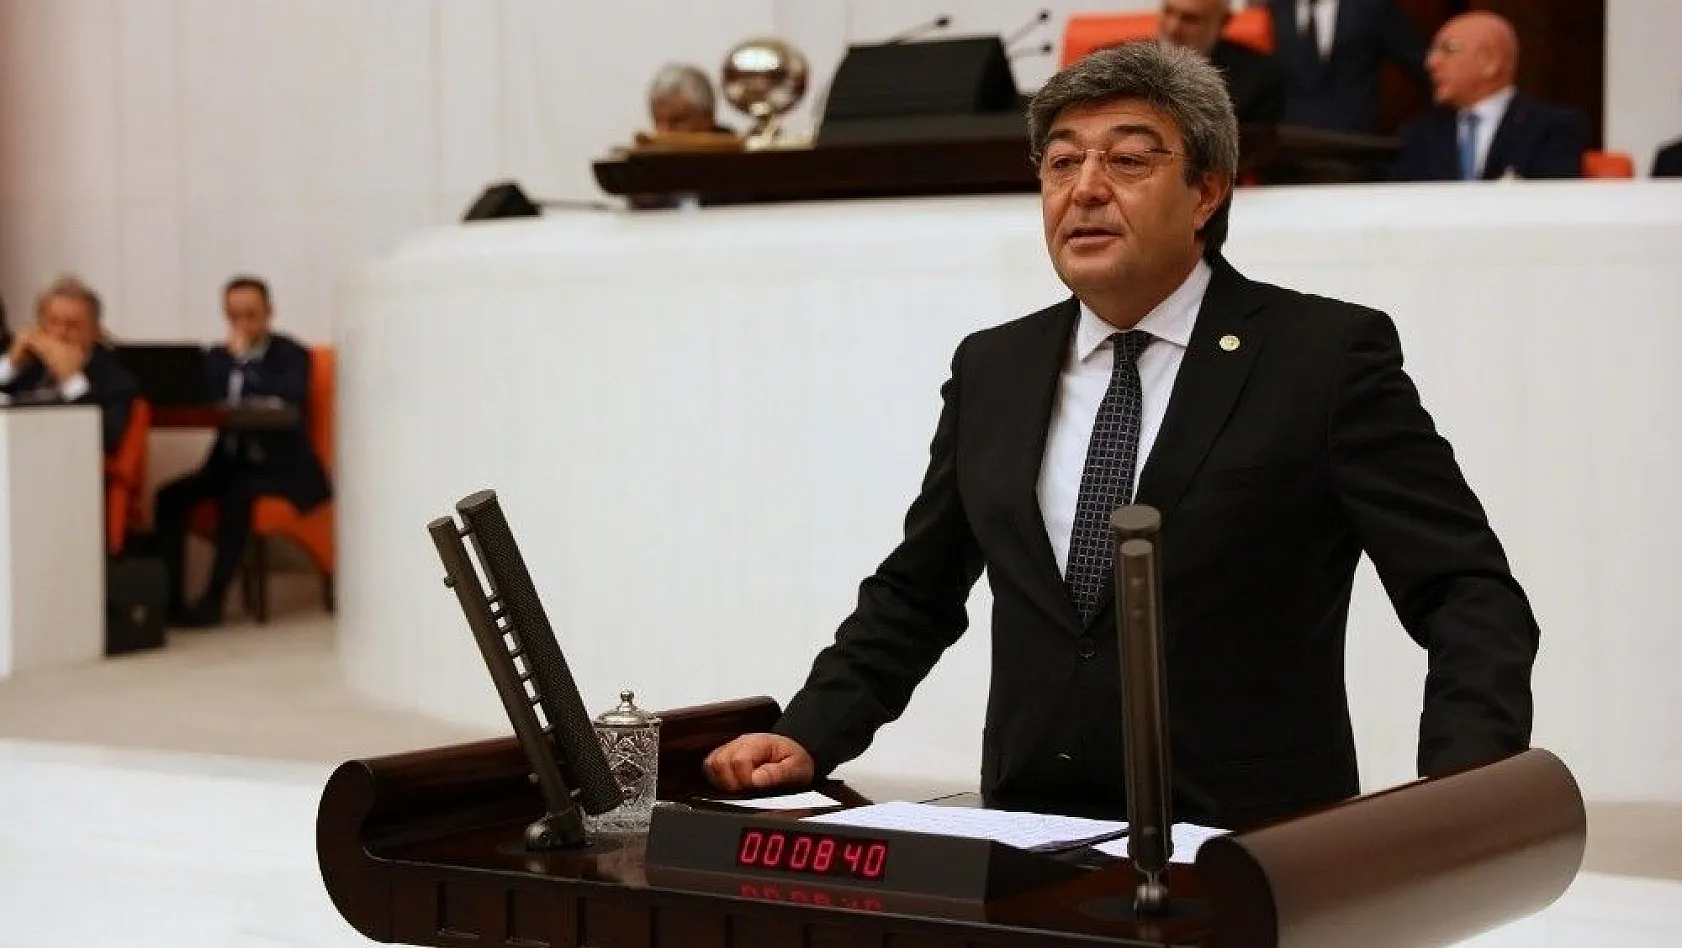 İYİ Parti Kayseri Milletvekili Dursun Ataş'tan küpe affı açıklaması
